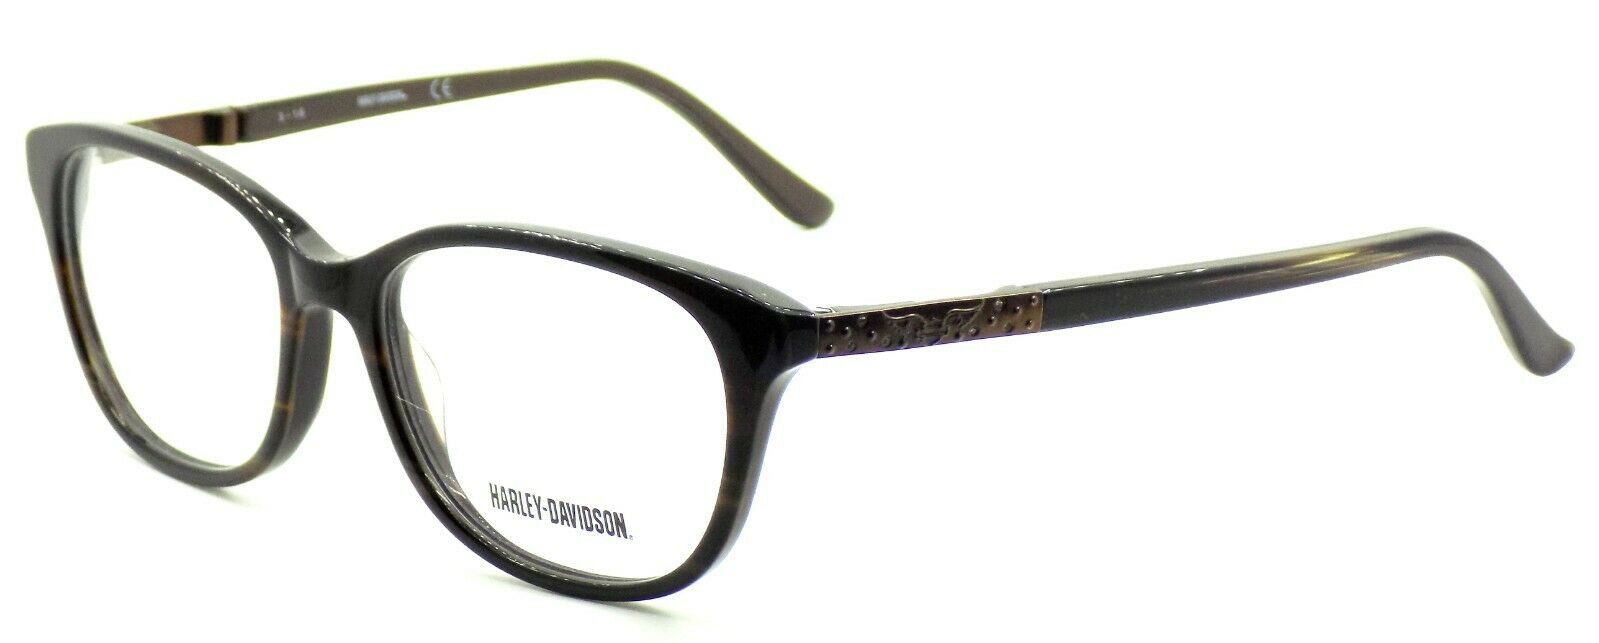 1-Harley Davidson HD0523 062 Women's Eyeglasses Frames 52-16-135 Brown Horn + CASE-664689756520-IKSpecs